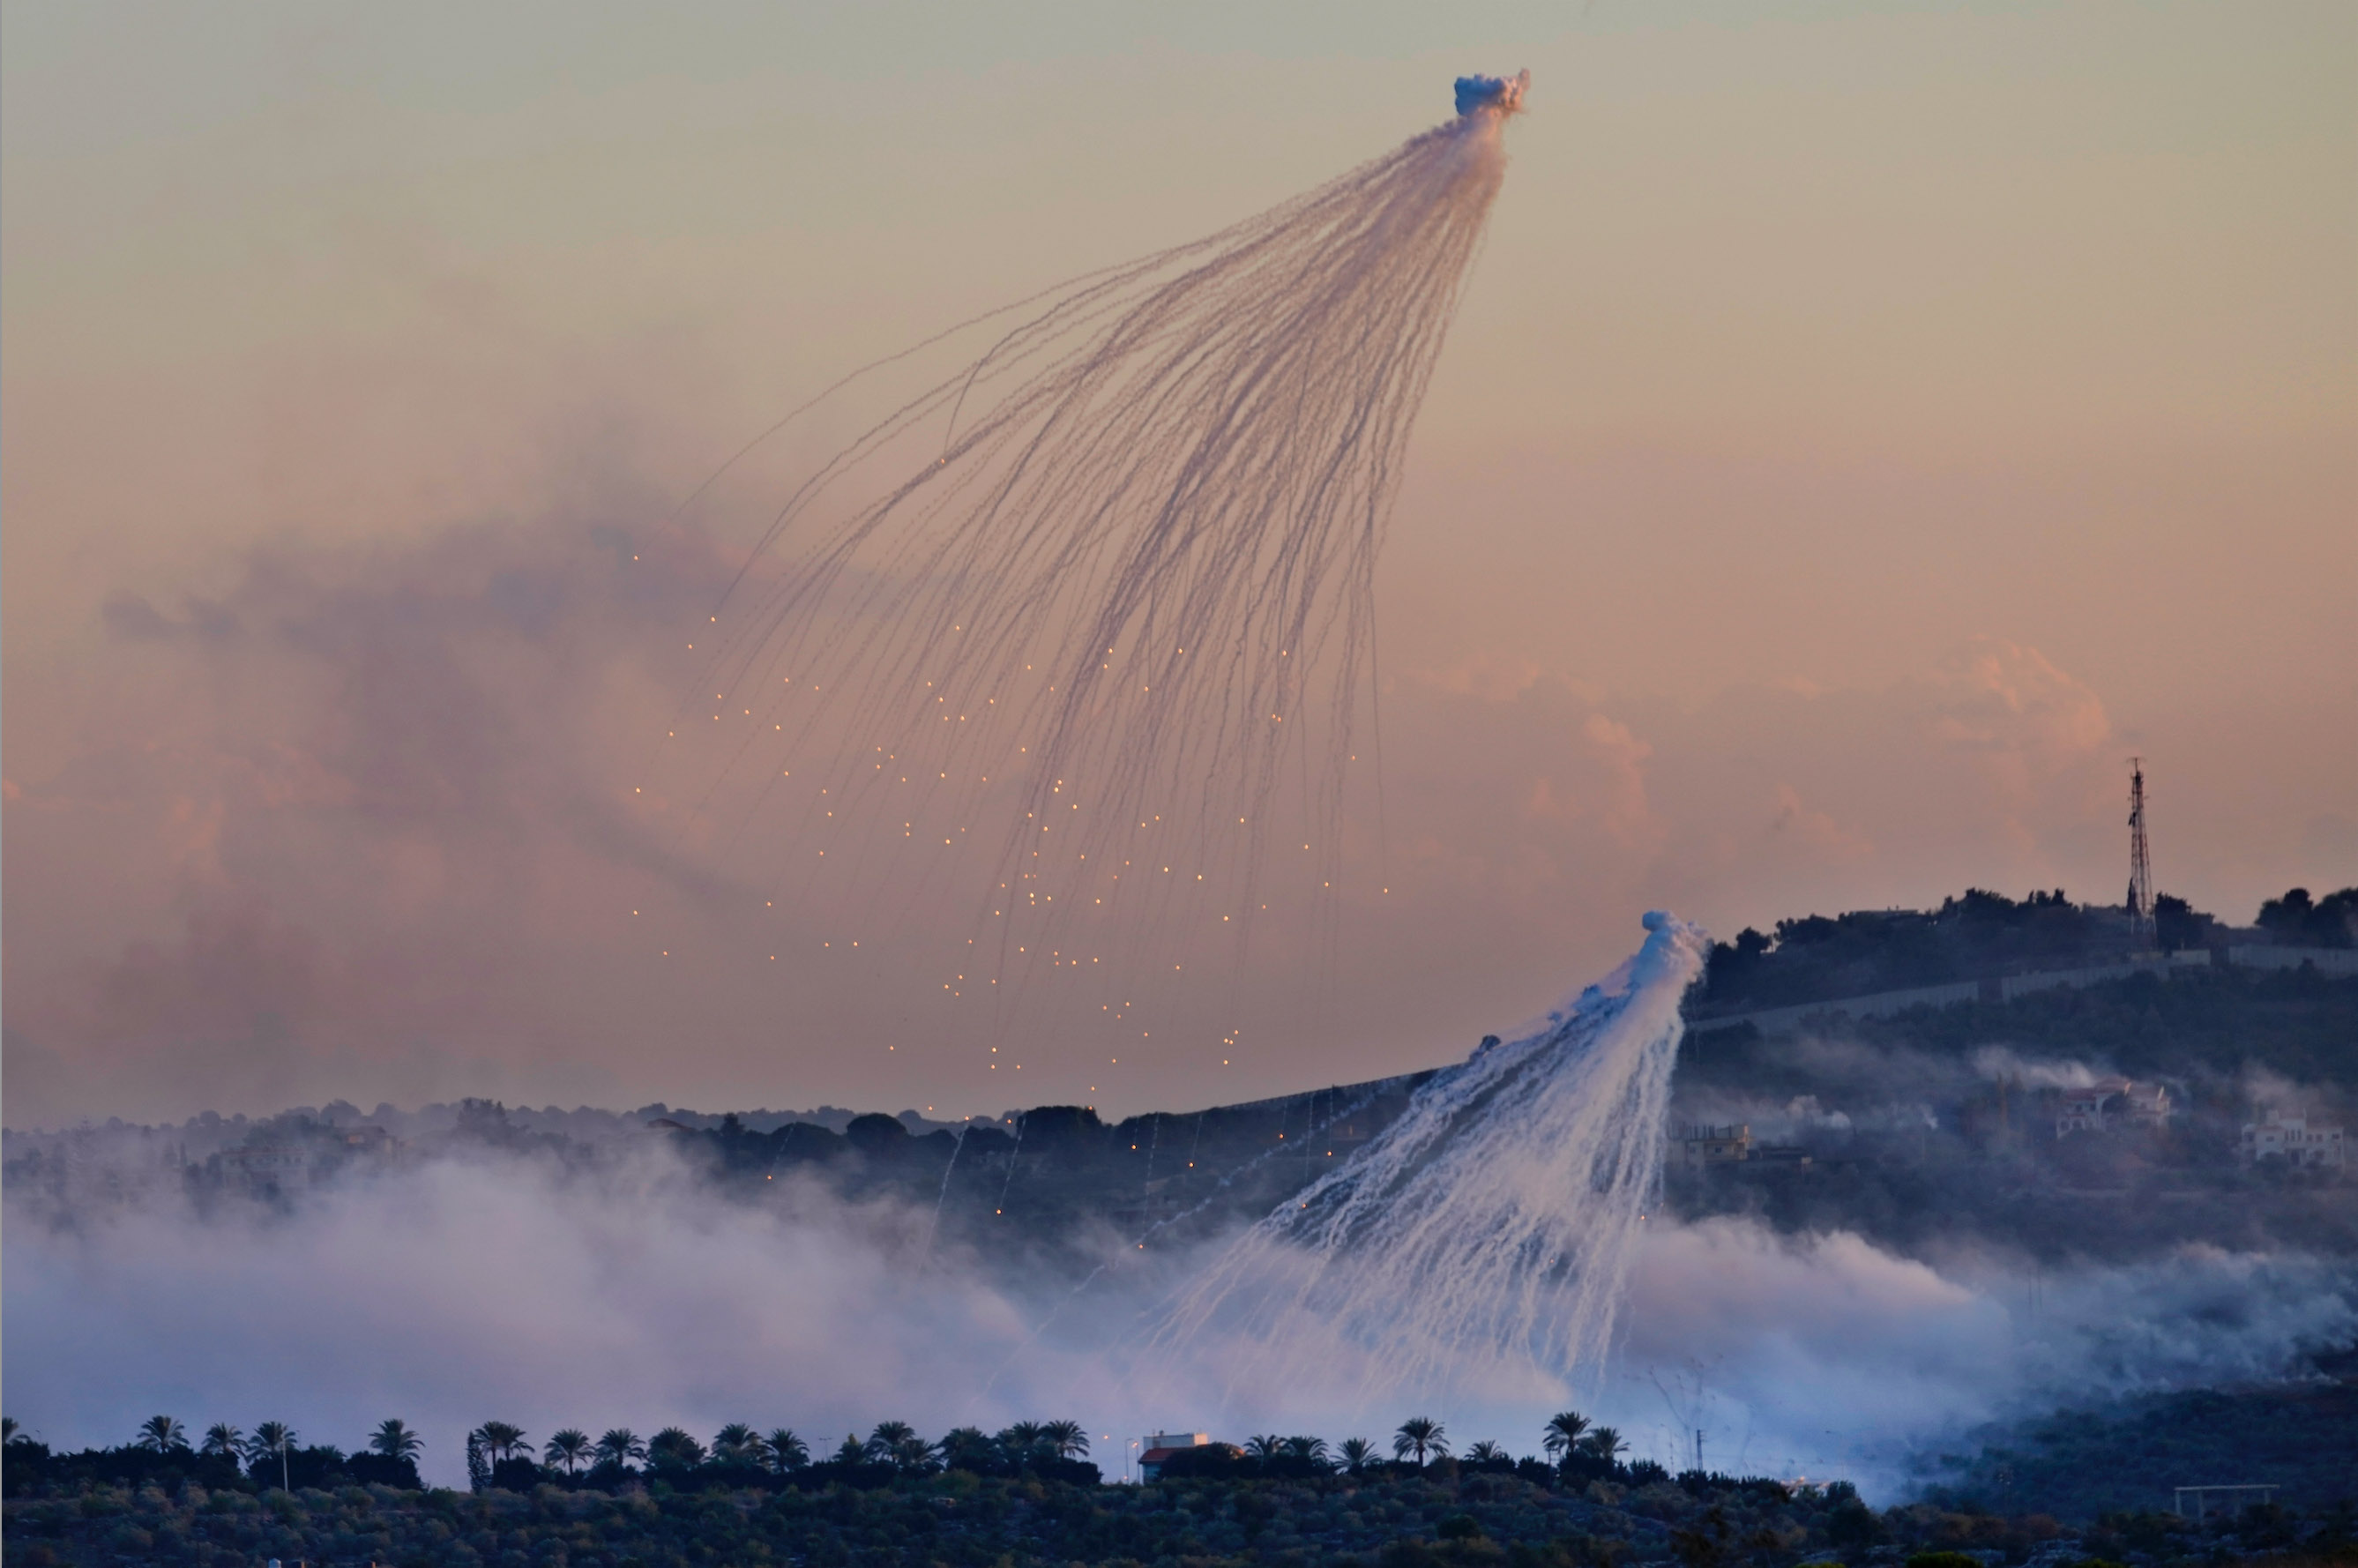 Snimljena 16. oktobra iznad sela Dajra, ova slika prikazuje tipian oblak dima u obliku hobotnice. Delovi jo uvek svetle dok otrovna municija pada prema zemlji/AP